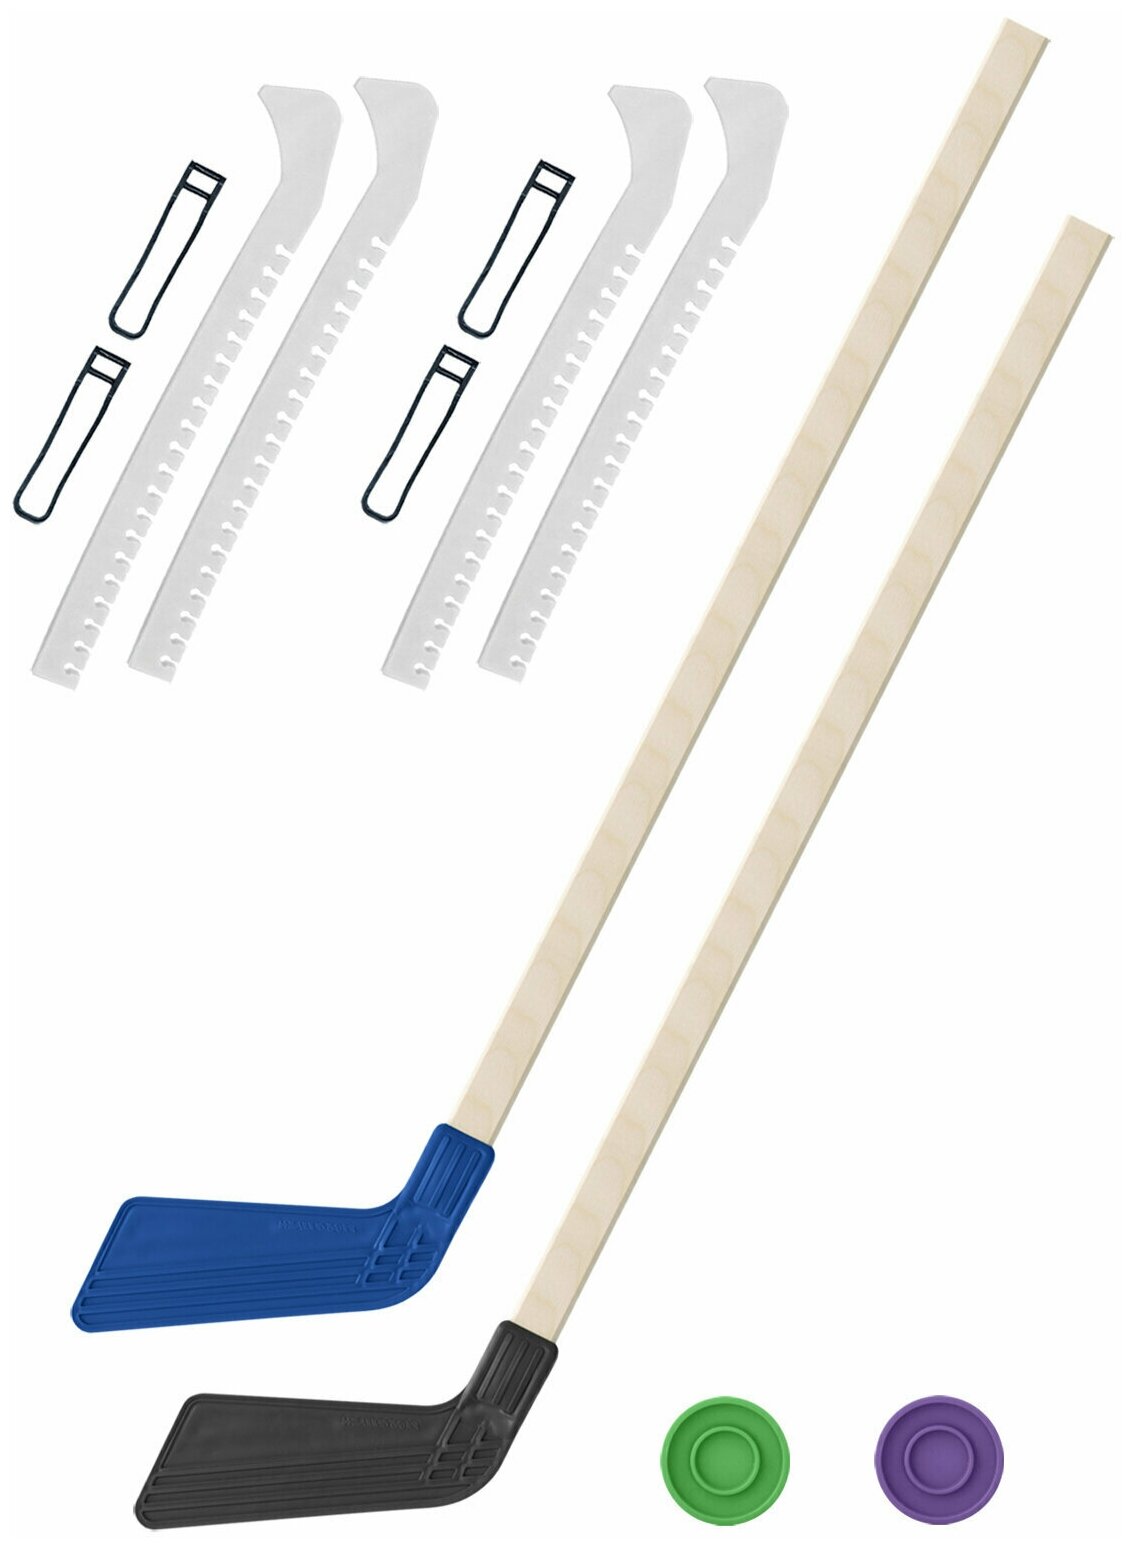 Детский хоккейный набор для игр на улице Клюшка хоккейная детская 2 шт синяя и чёрная 80 см.+2 шайбы + Чехлы для коньков белые - 2 шт. Винтер